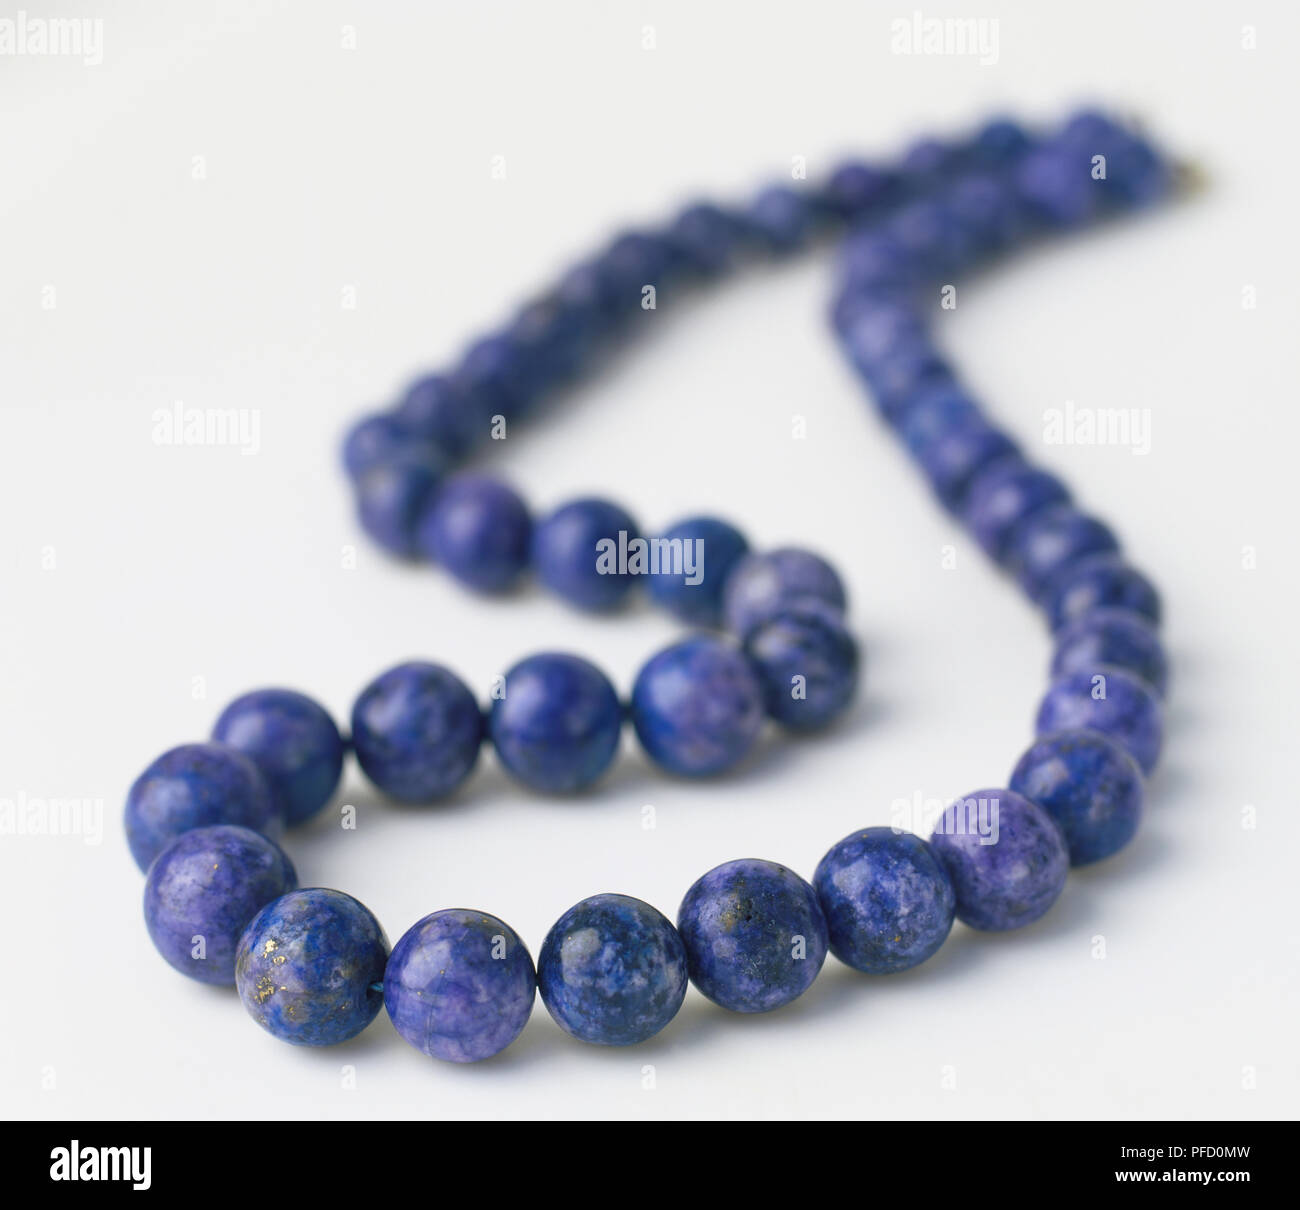 Collar de lapislázuli, grandes, redondos, cordones azul violáceo, de forma uniforme, superficie lisa, un alto ángulo de visualización, se centran en la parte delantera. Foto de stock